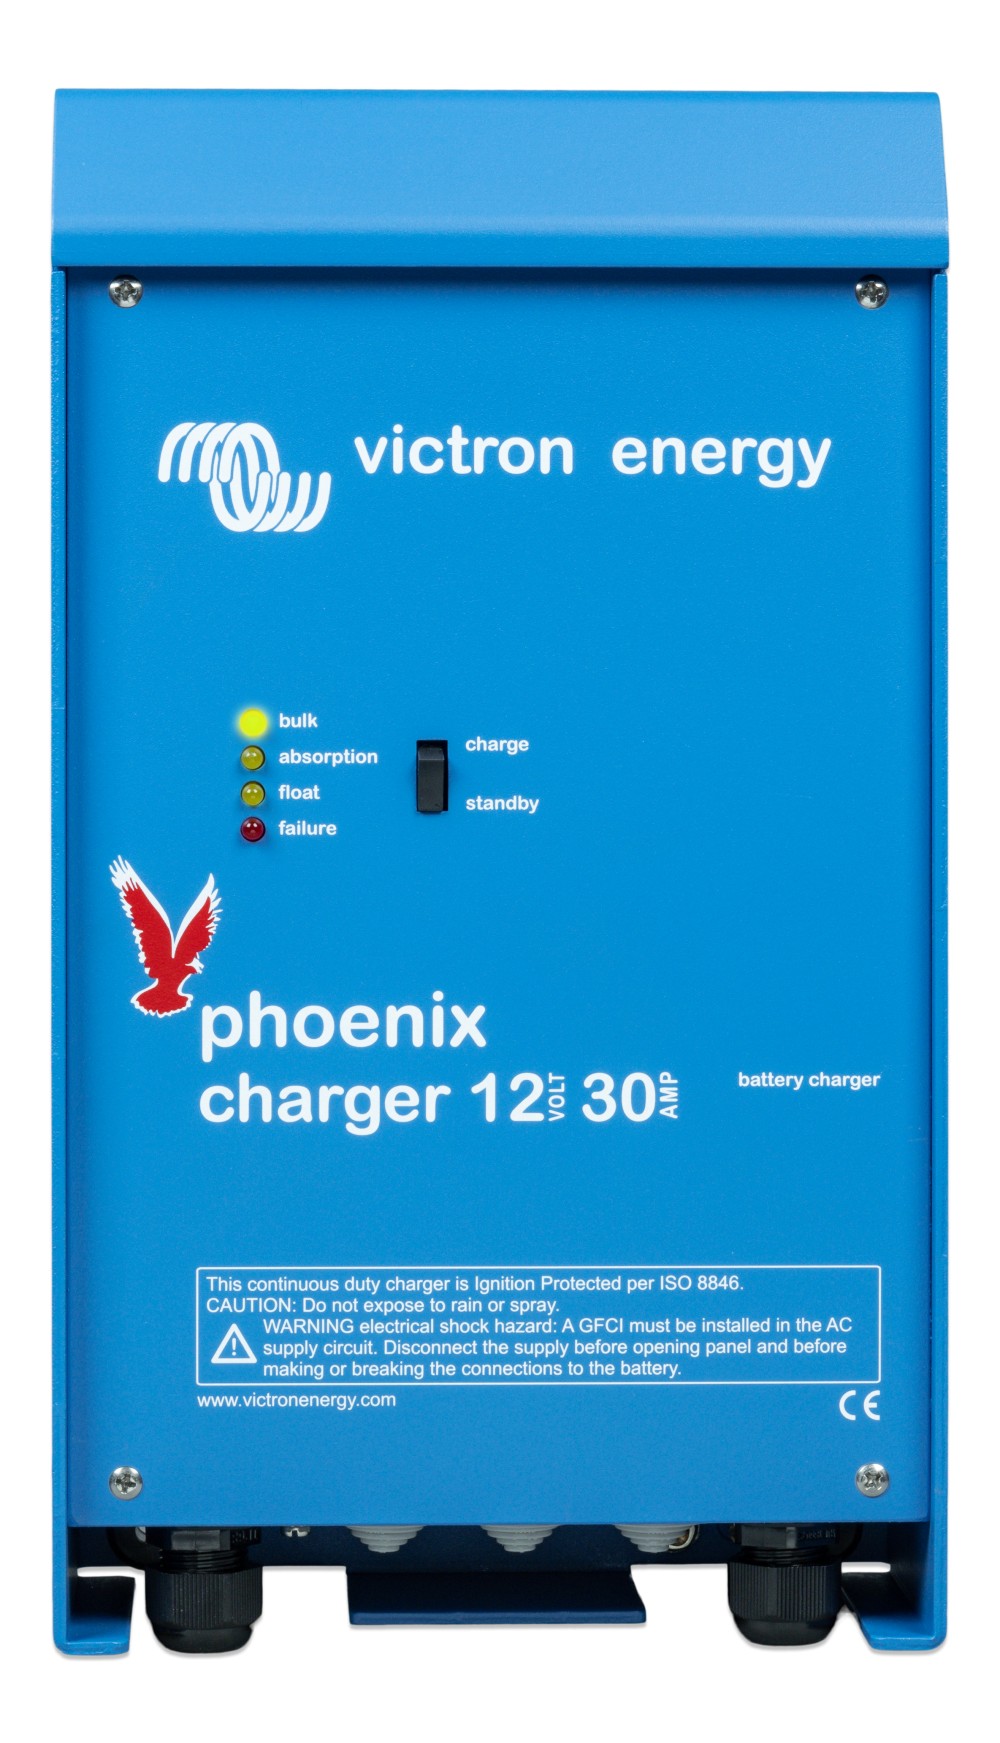 Victron Energy Phoenix 12V 30A (2+1) akkumulátortöltő